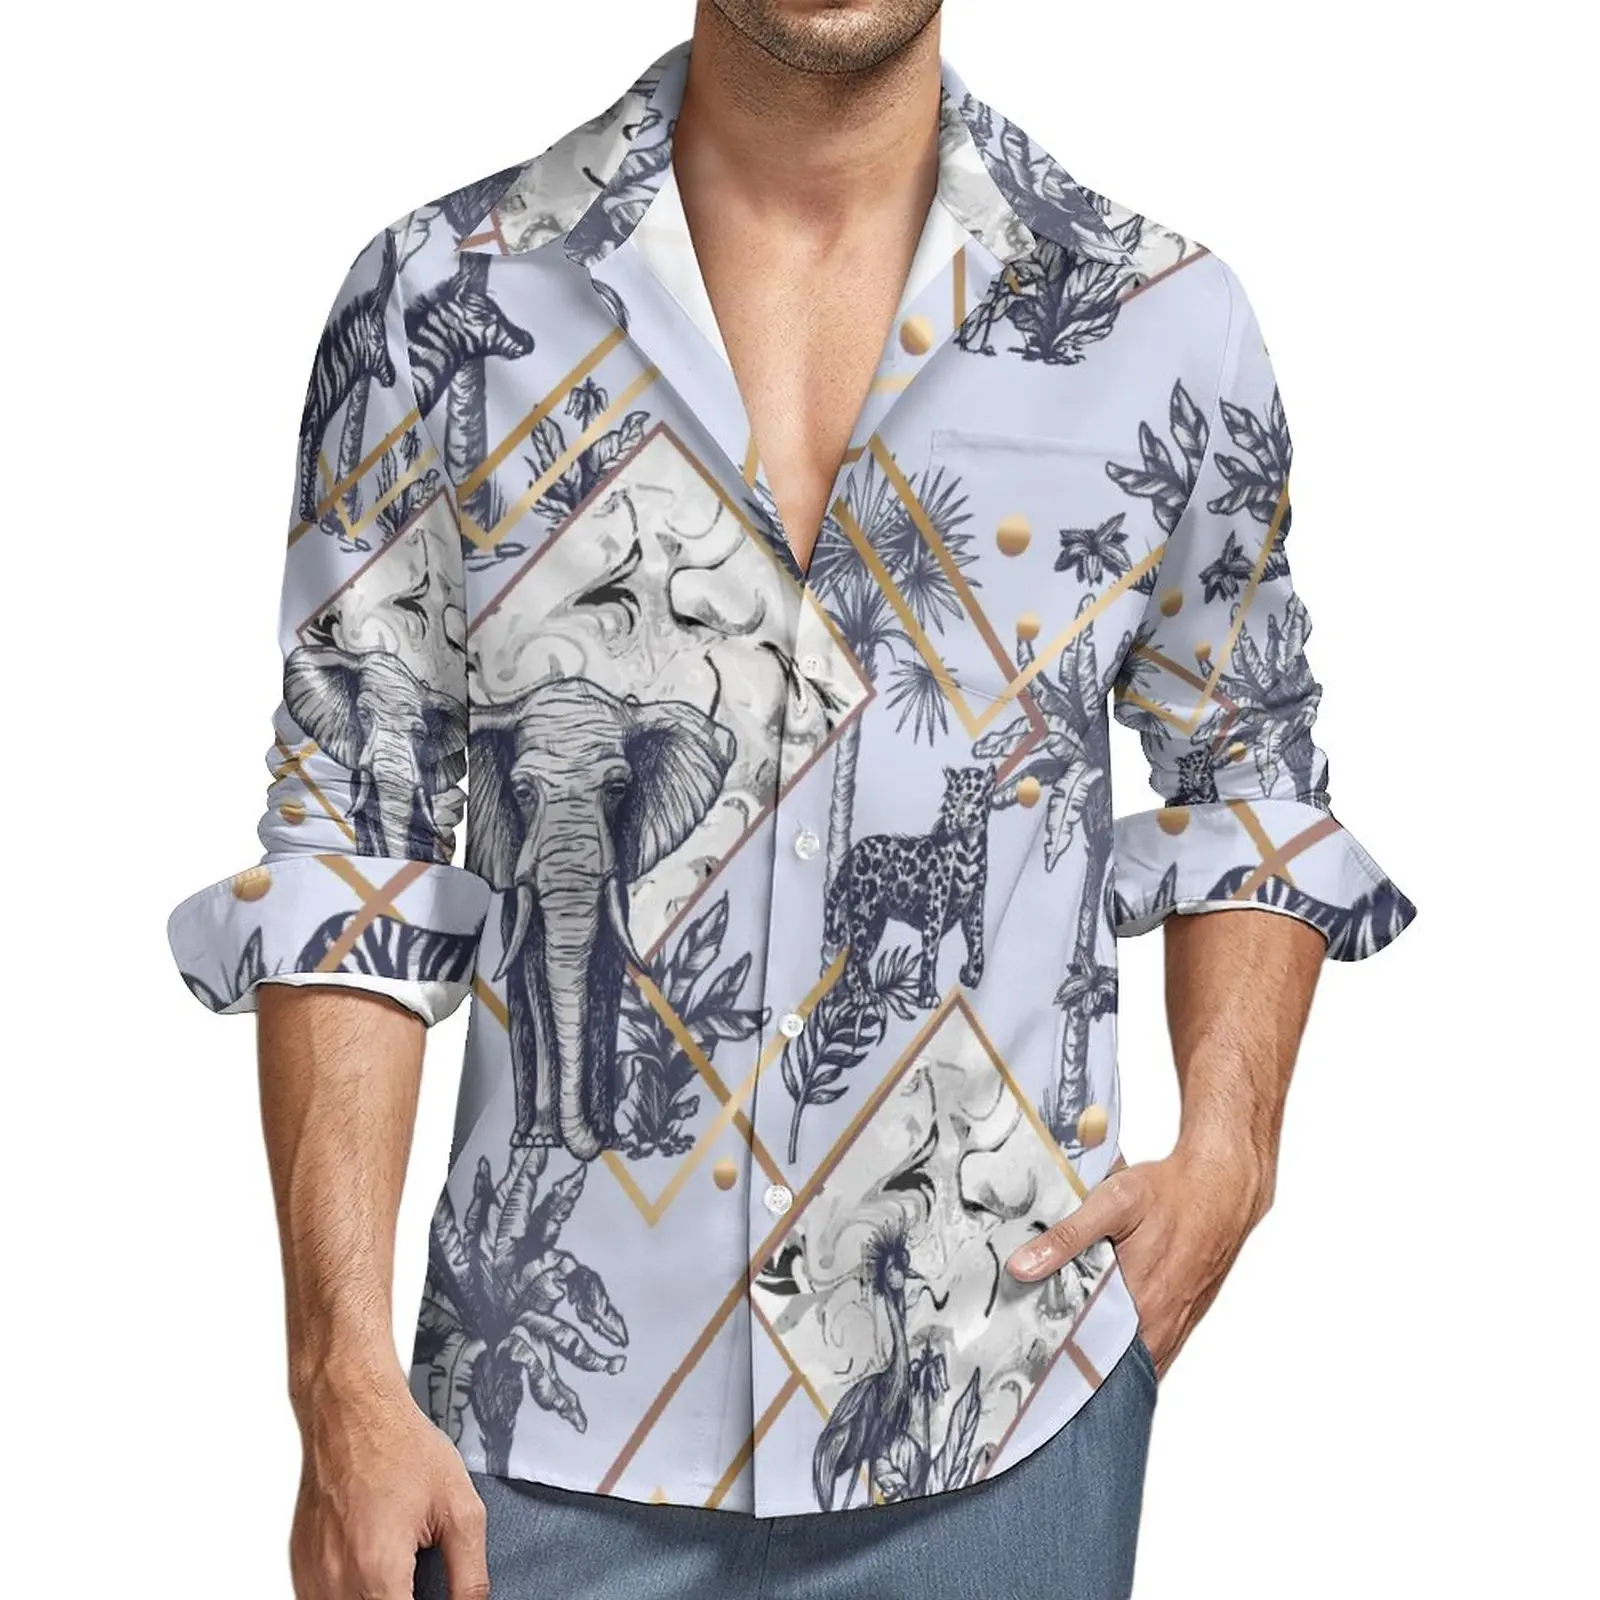 

Рубашка в виде слона, осенняя Повседневная рубашка с принтом животных дикой природы, мужские винтажные блузки, уличная одежда большого разм...